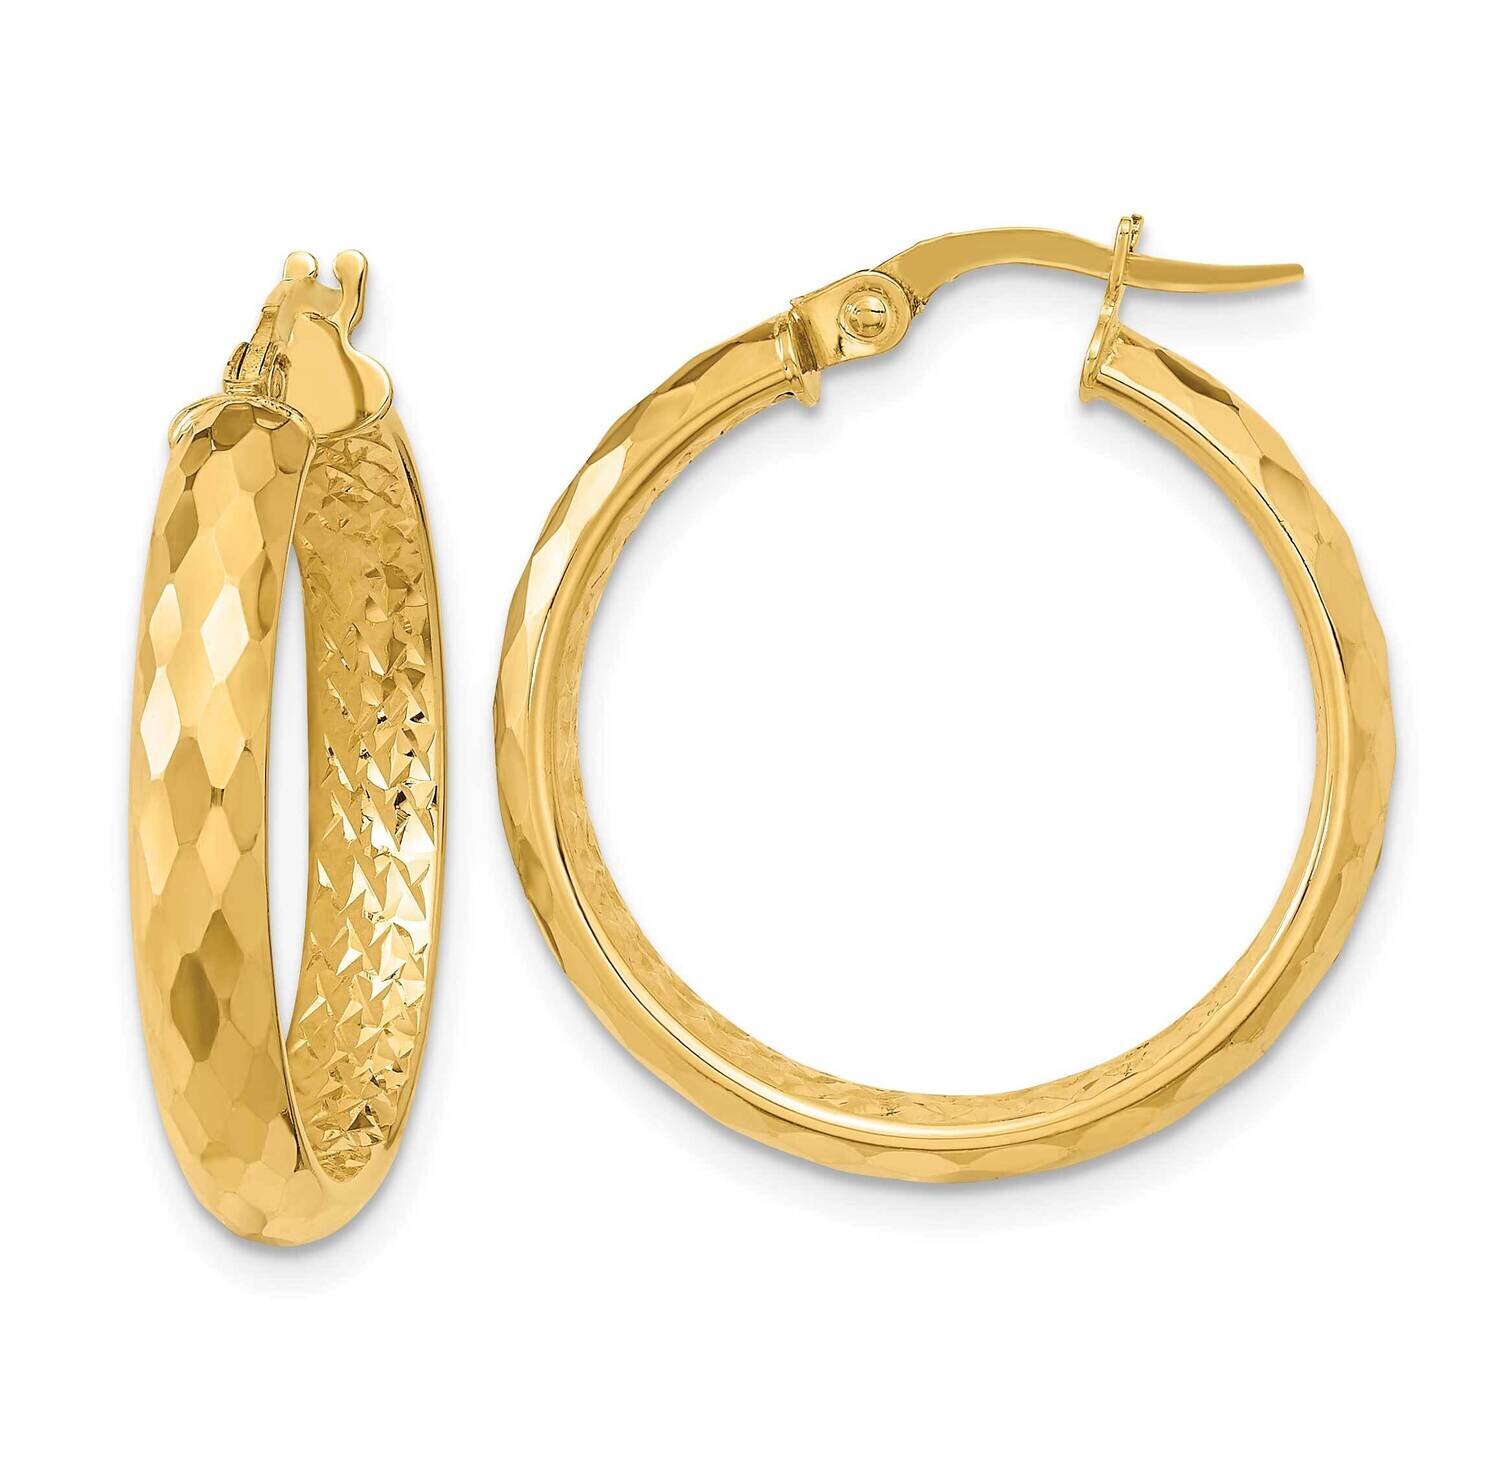 Textured Diamond-Cut Inside Fancy Hoop Earrings 14k Gold Polished TC1025